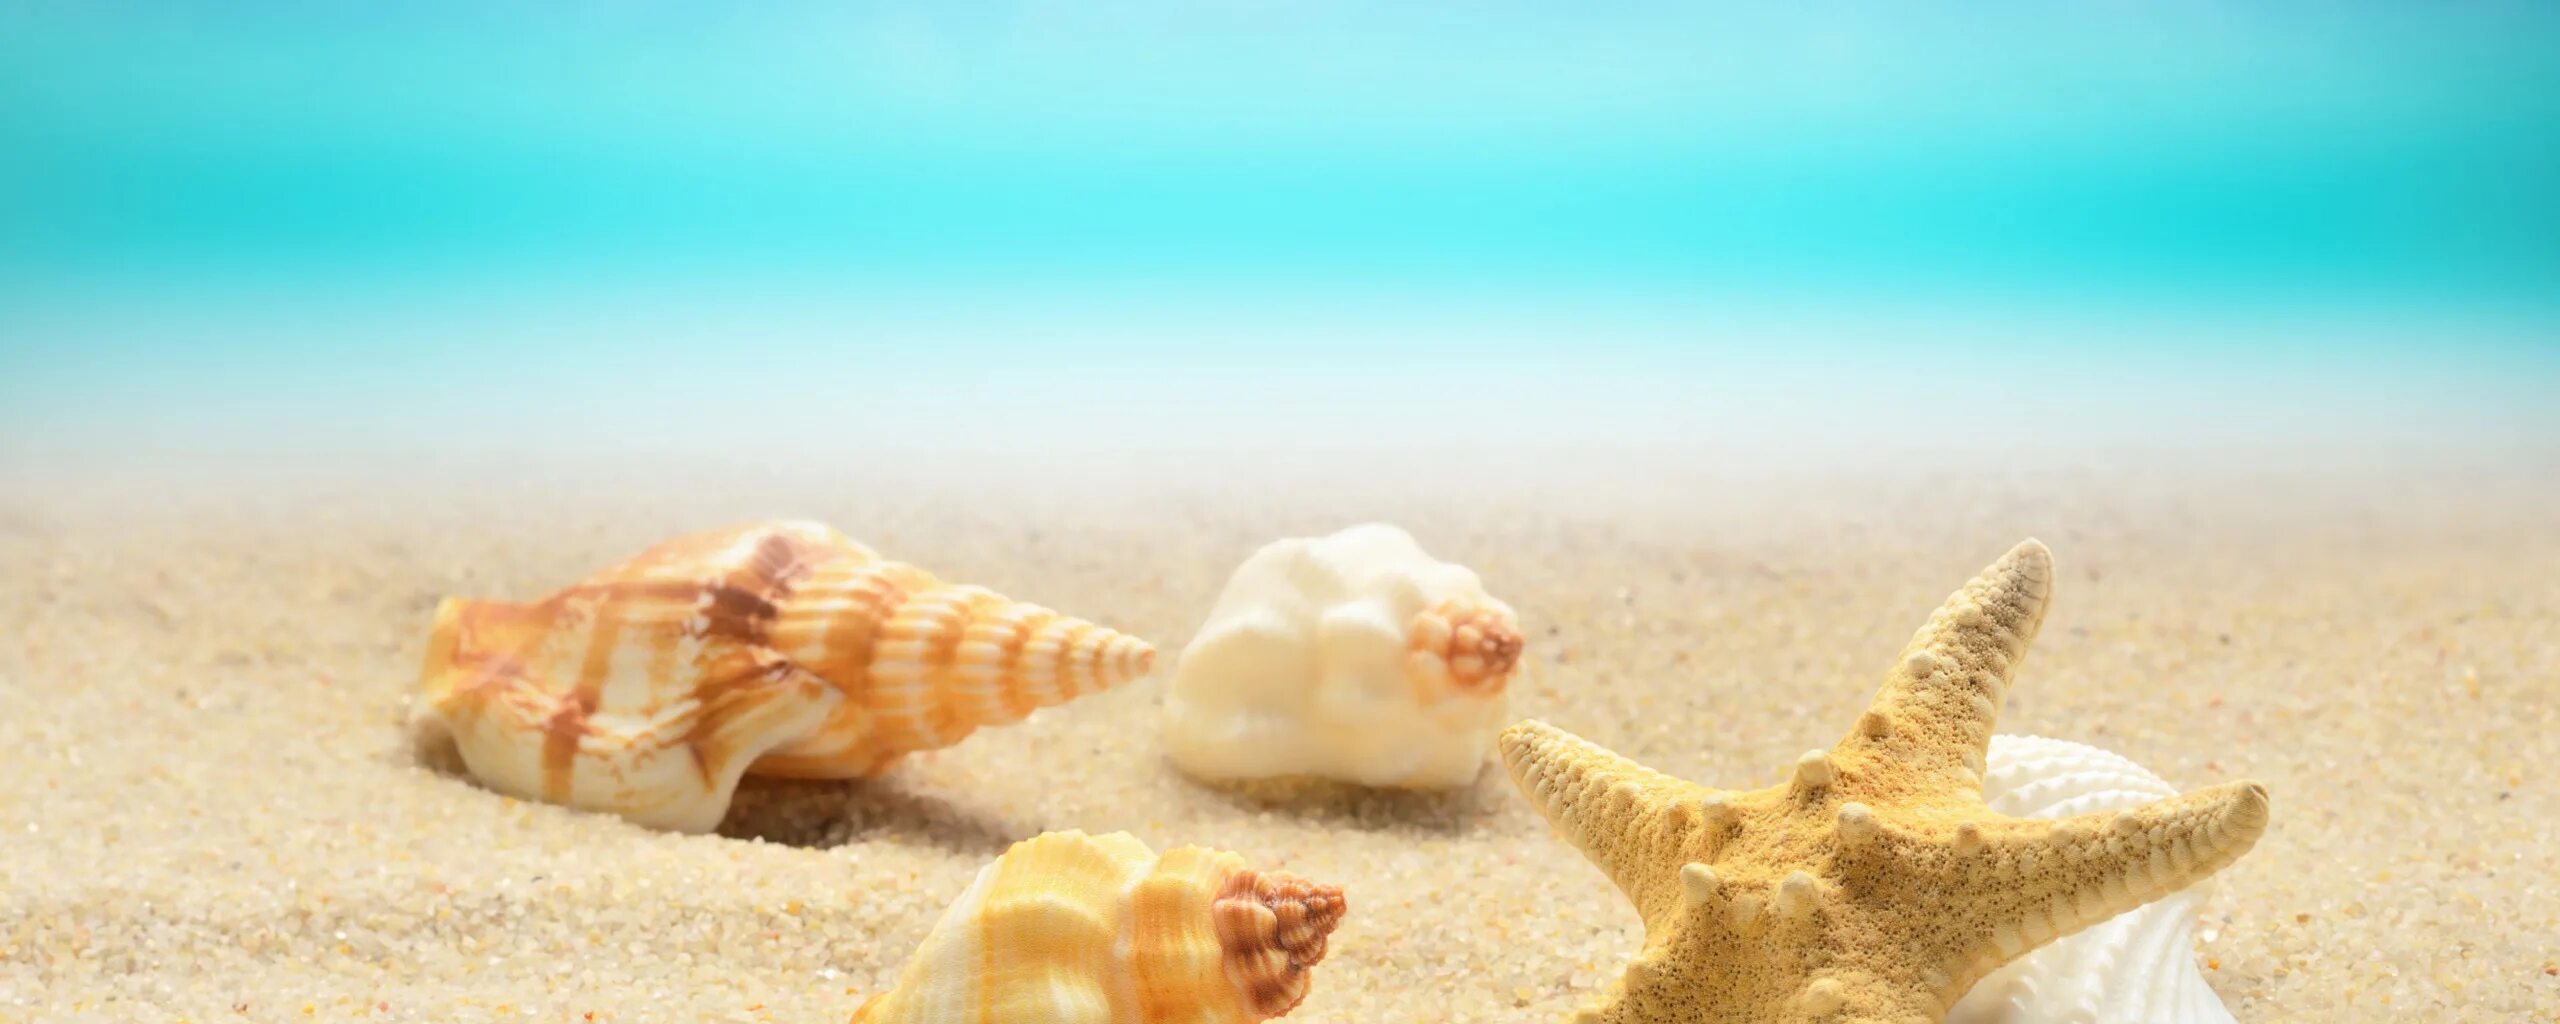 Ракушки на пляже. Песок пляж ракушки. Морской пляж песок. Морская звезда и ракушки на песке.